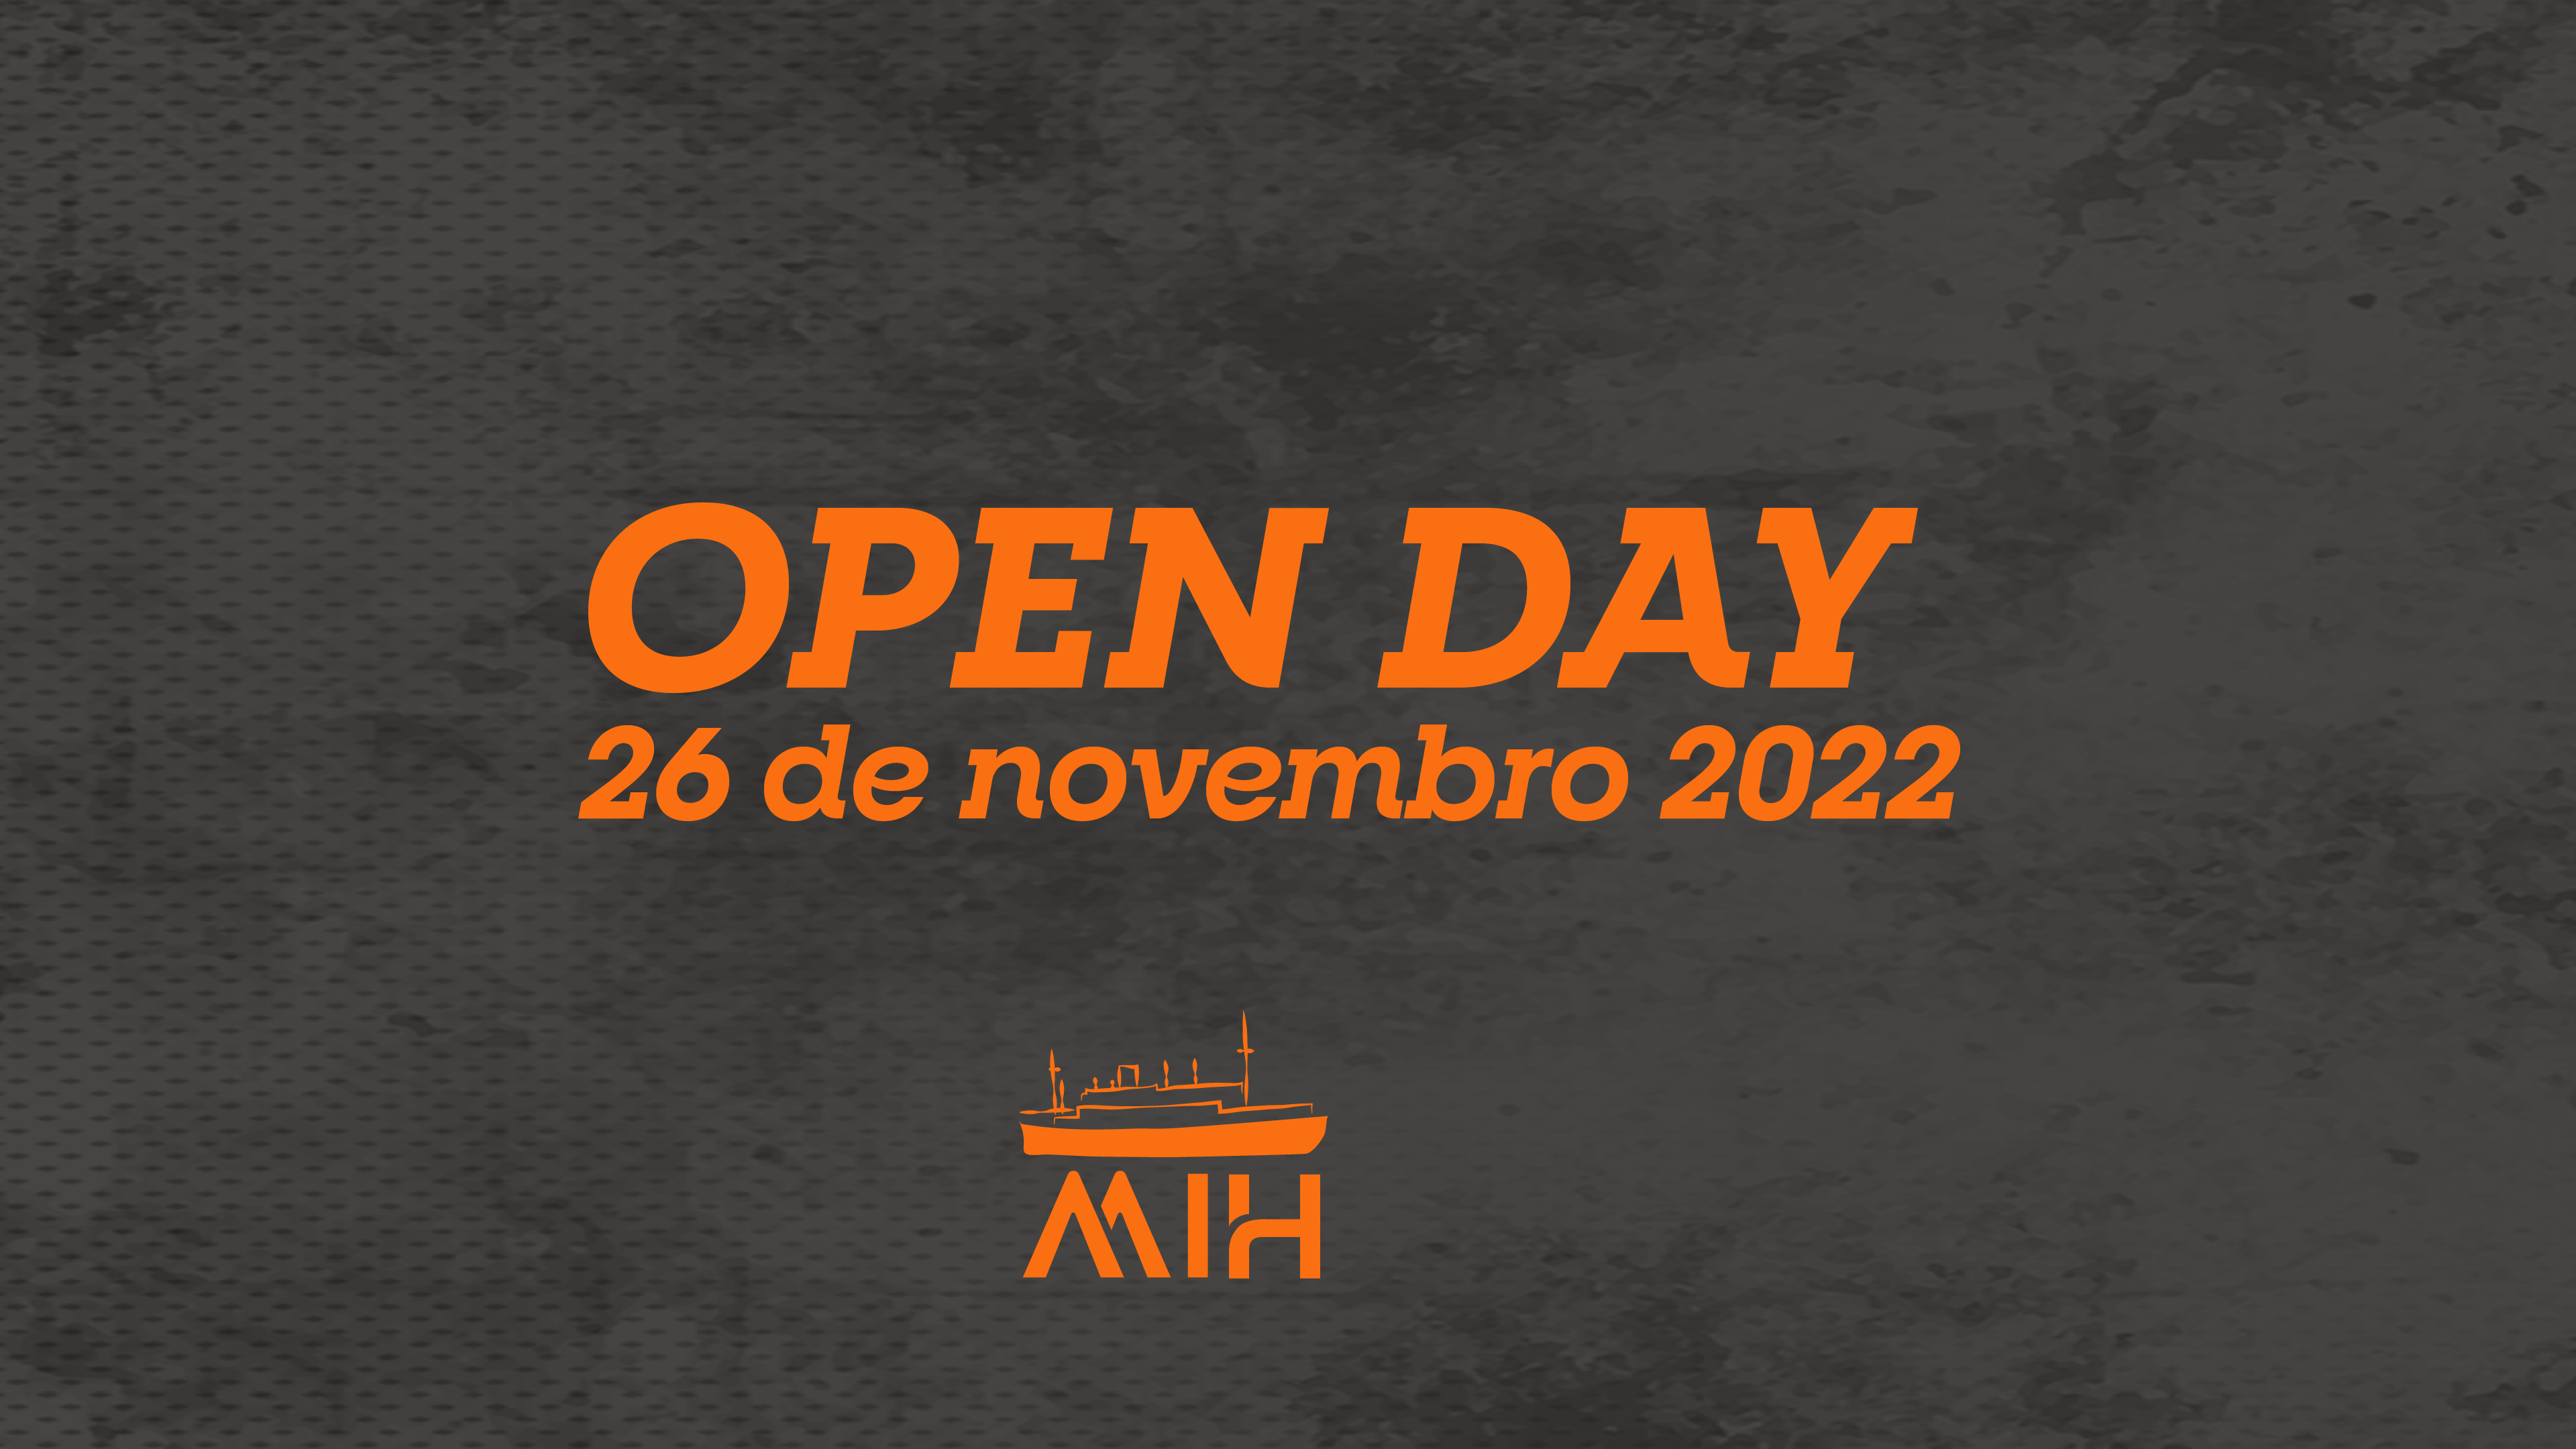 OPEN DAY MIH DIA 01 - 26 DE NOVEMBRO DE 2022